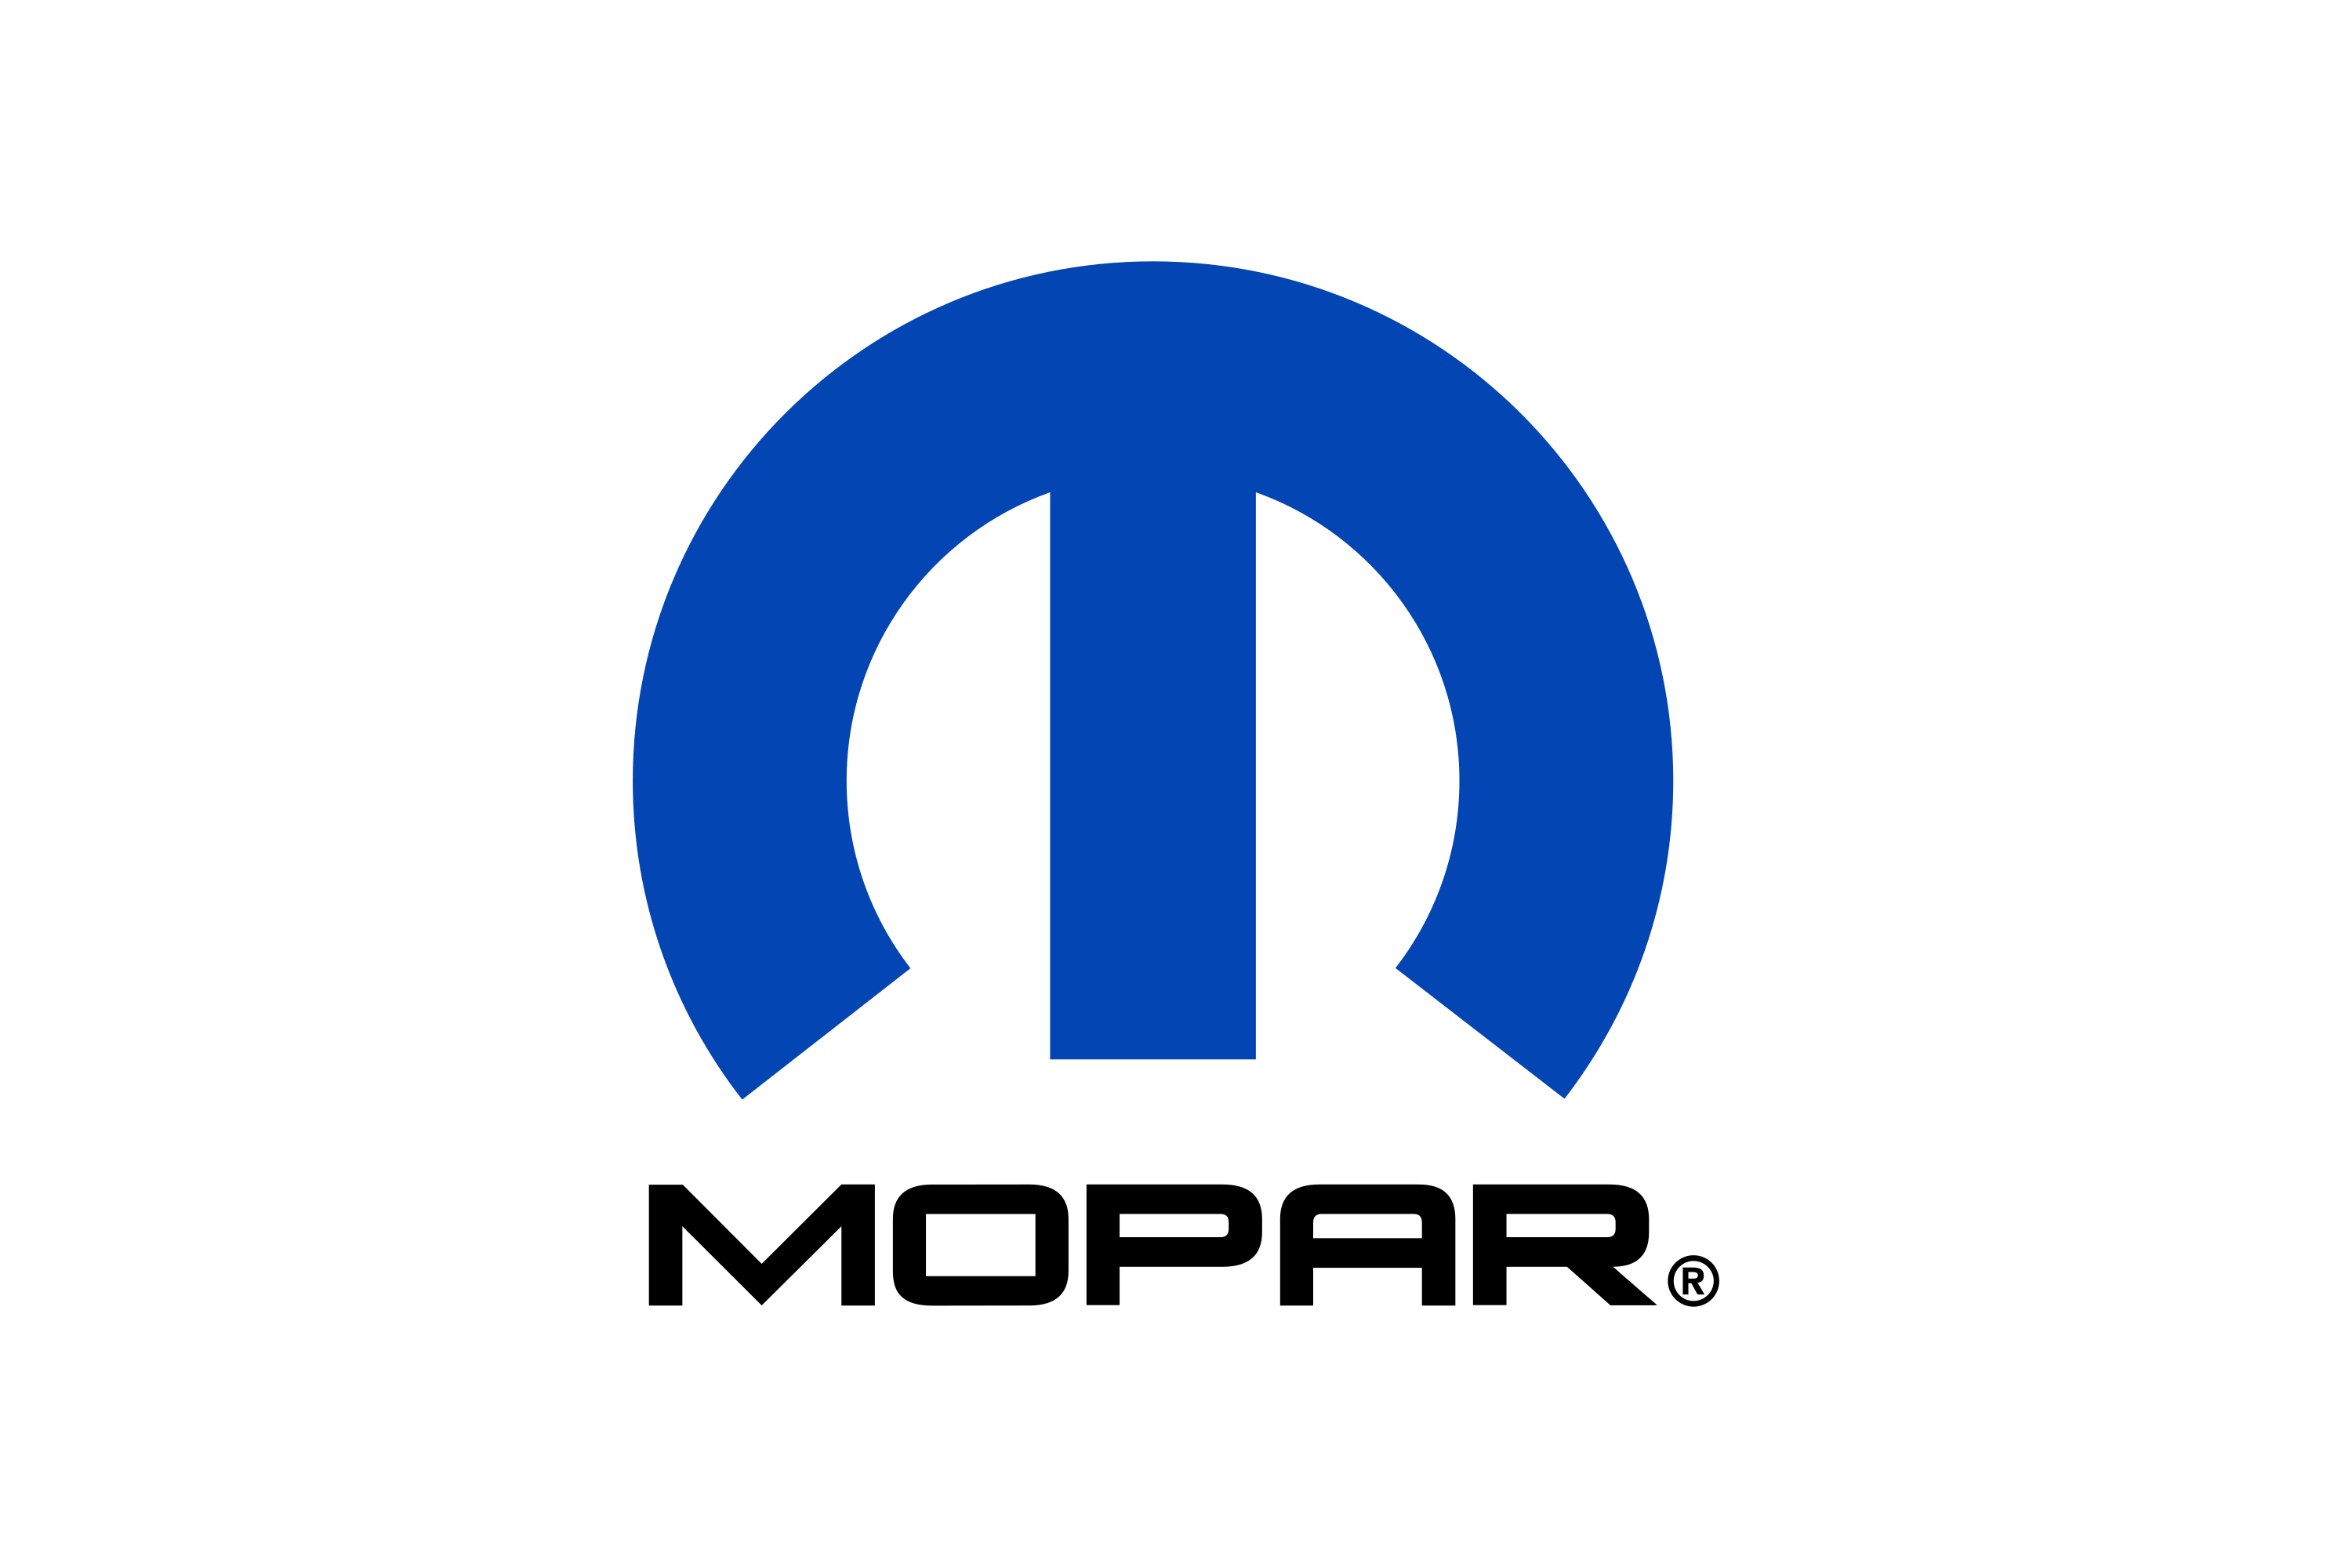 Download Mopar Logo in SVG Vector or PNG File Format - Logo.wine